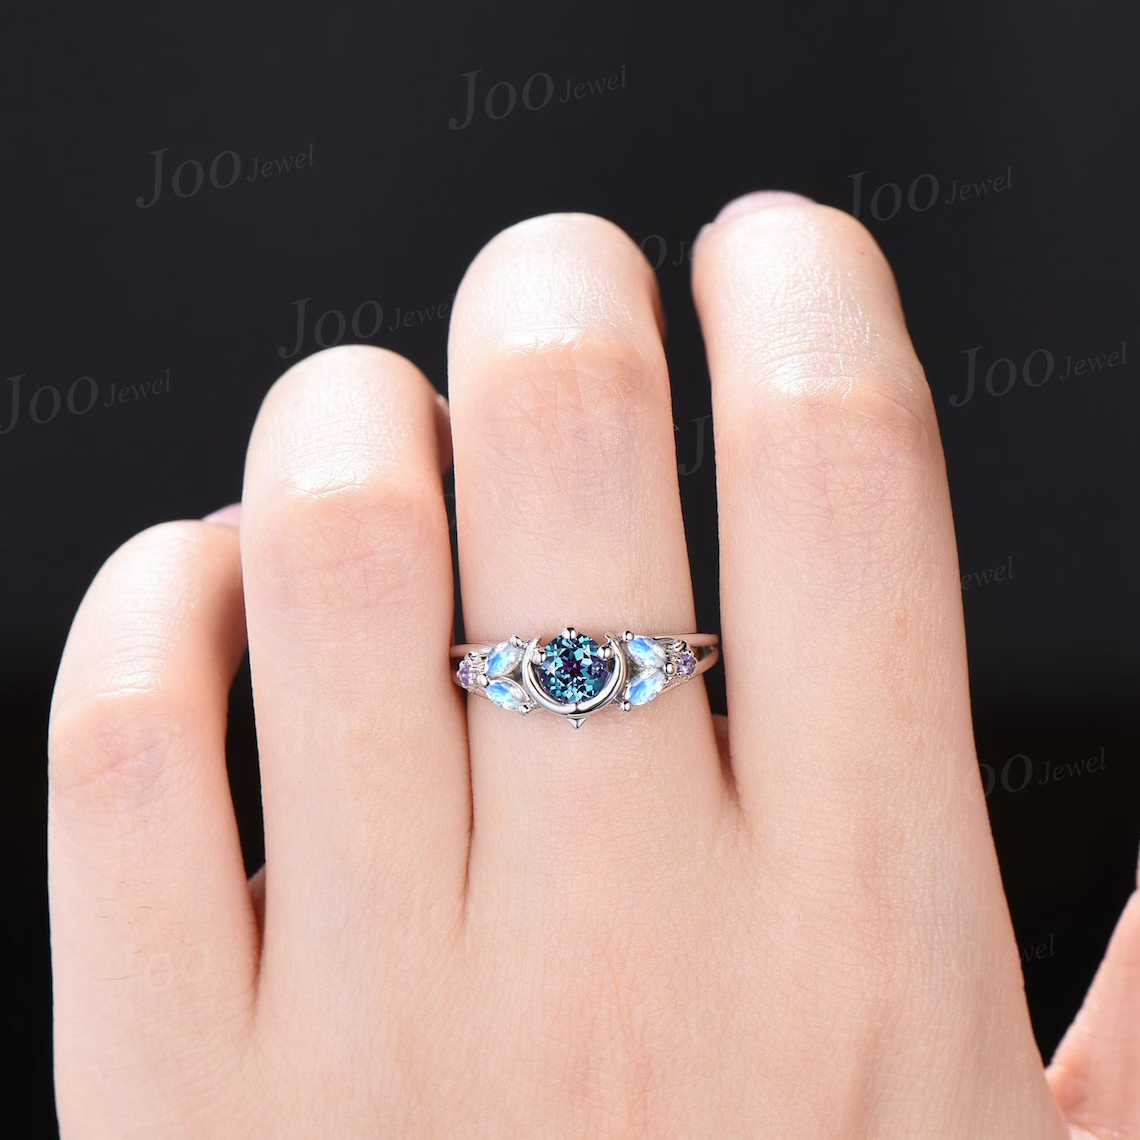 5mm Color-Change Alexandrite Engagement Ring Moon Star Ring White Gold Split Shank Design Moonstone Amethyst Celestial Wedding Ring Platinum